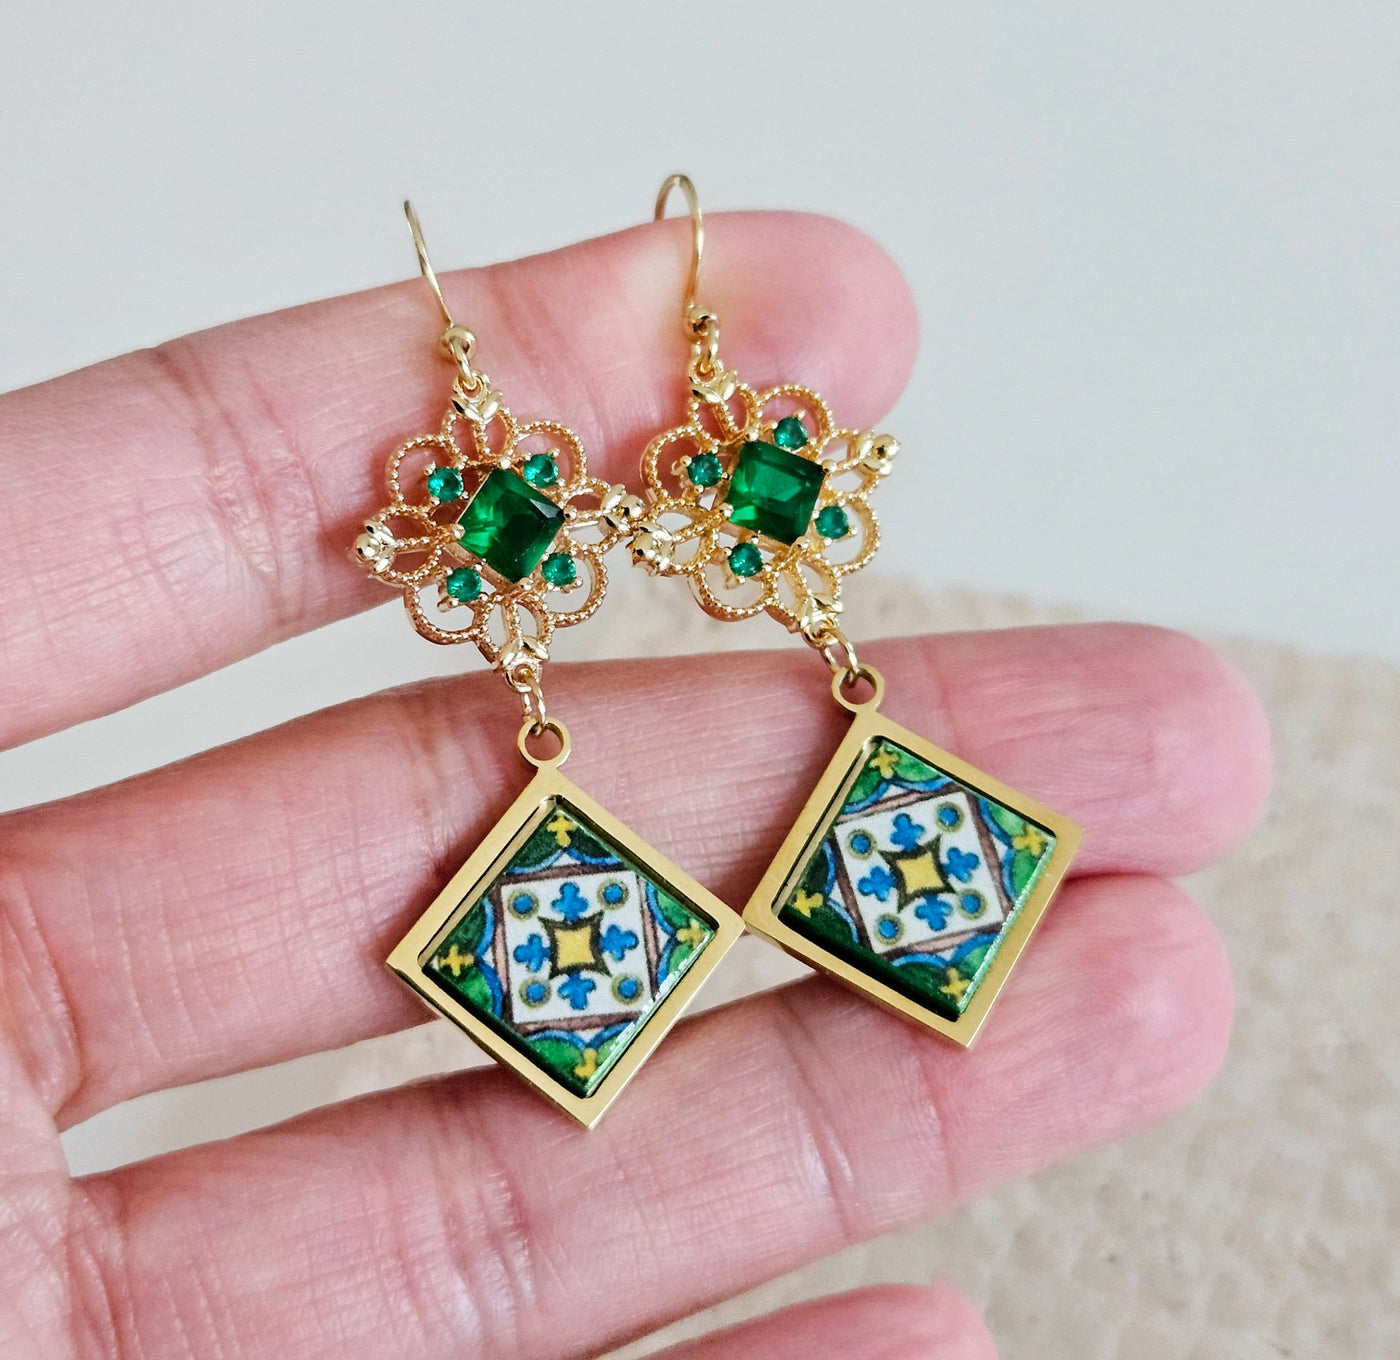 Green Baroque Royal Dangle Earring Majolica Emerald Tile Earring Handmade Diamond Square Jewelry Gift Boho Gift for Mom Travel Memorial Gift